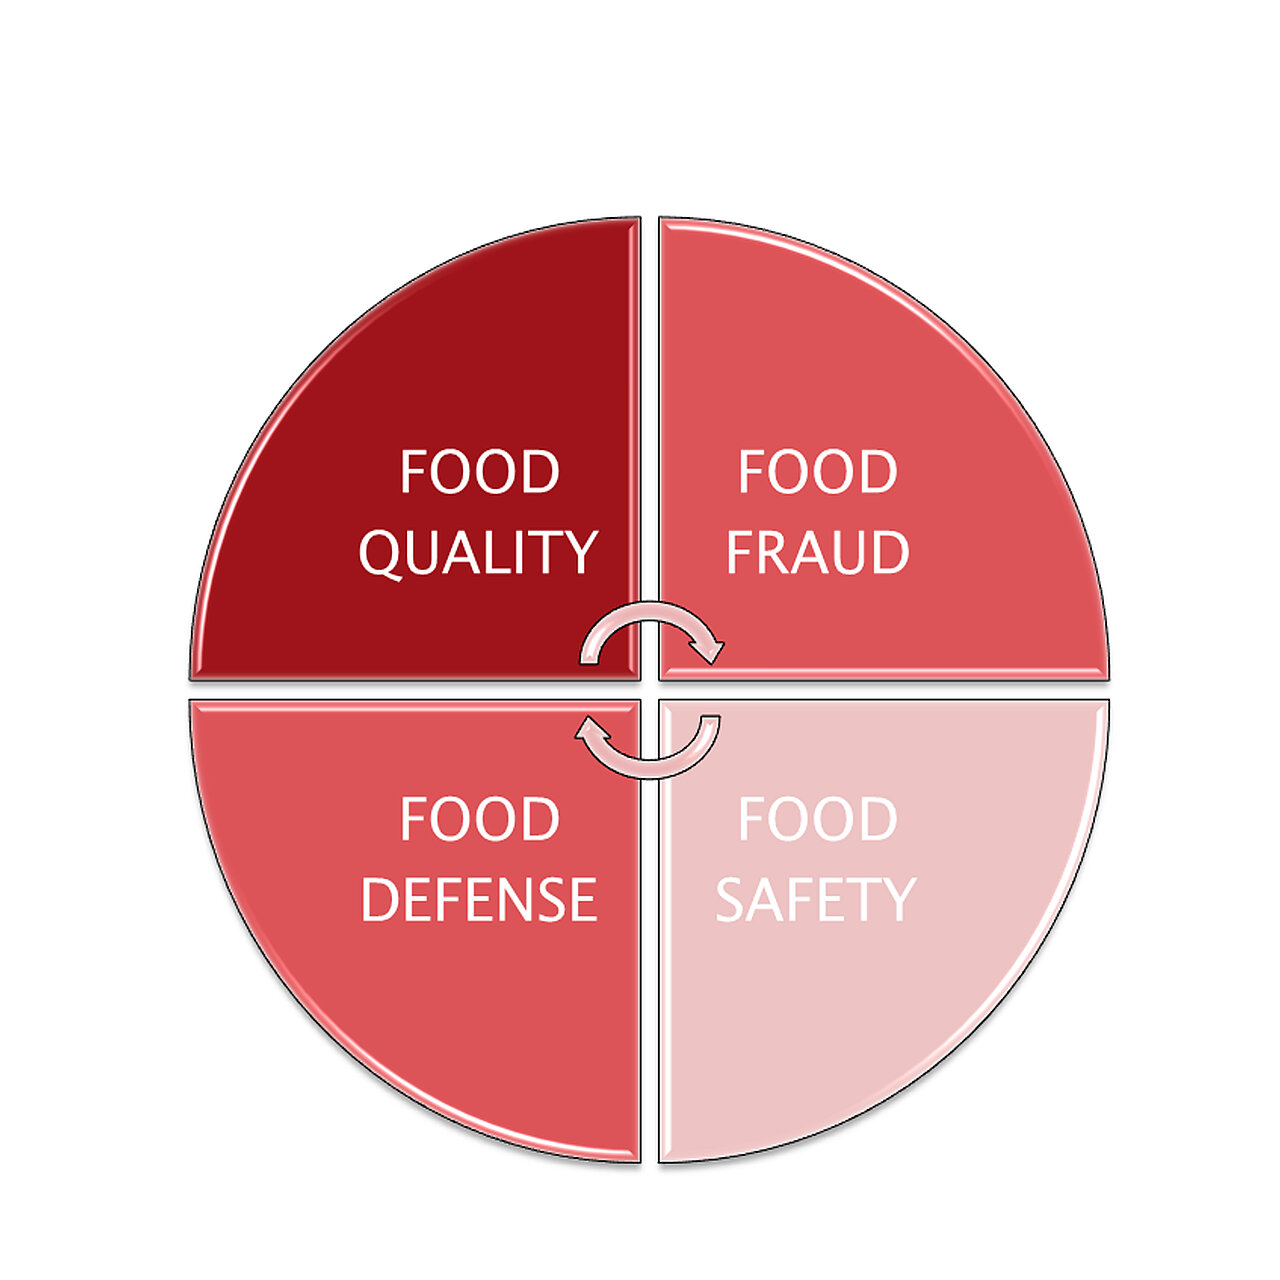  Een goed food defense-plan is voor bedrijven in de voedingsindustrie onontbeerlijk om optimale voedselveiligheid te garanderen